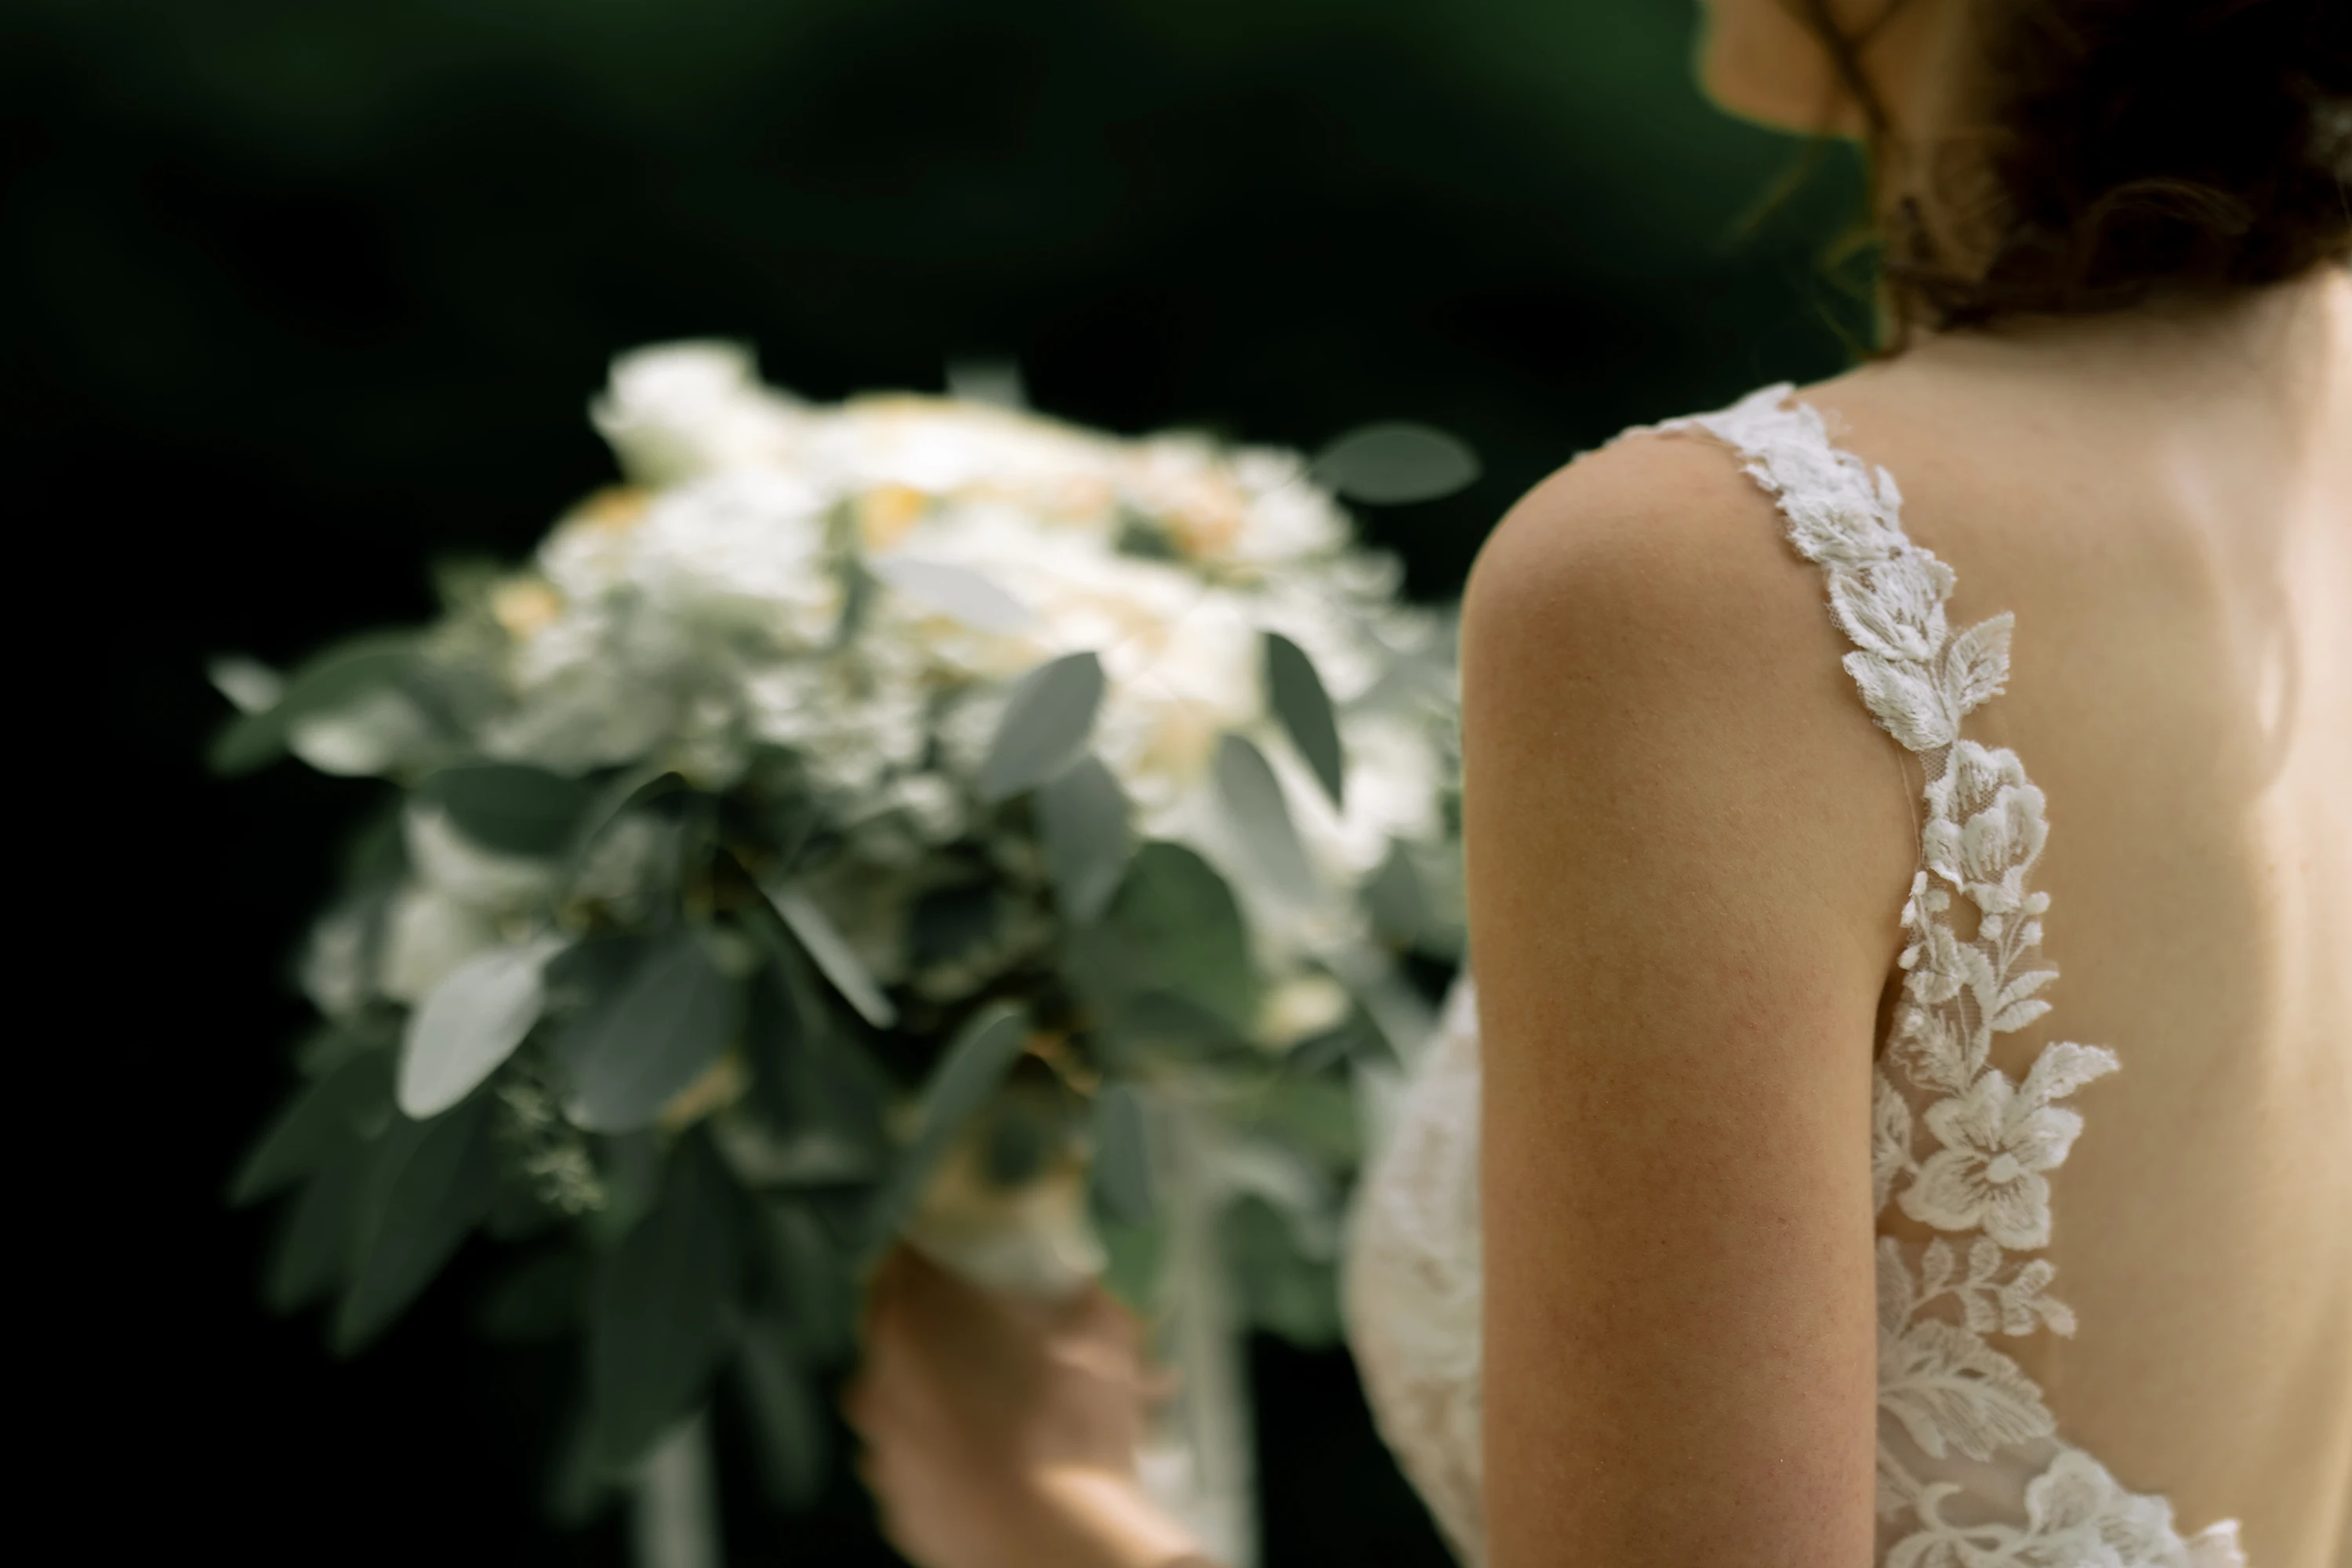 Die Braut von hinten, seitlich. Der Brautstrauß im Hintergrund unscharf erkennbar, im Vordergrund sind Details des Brautkleids erkennbar.